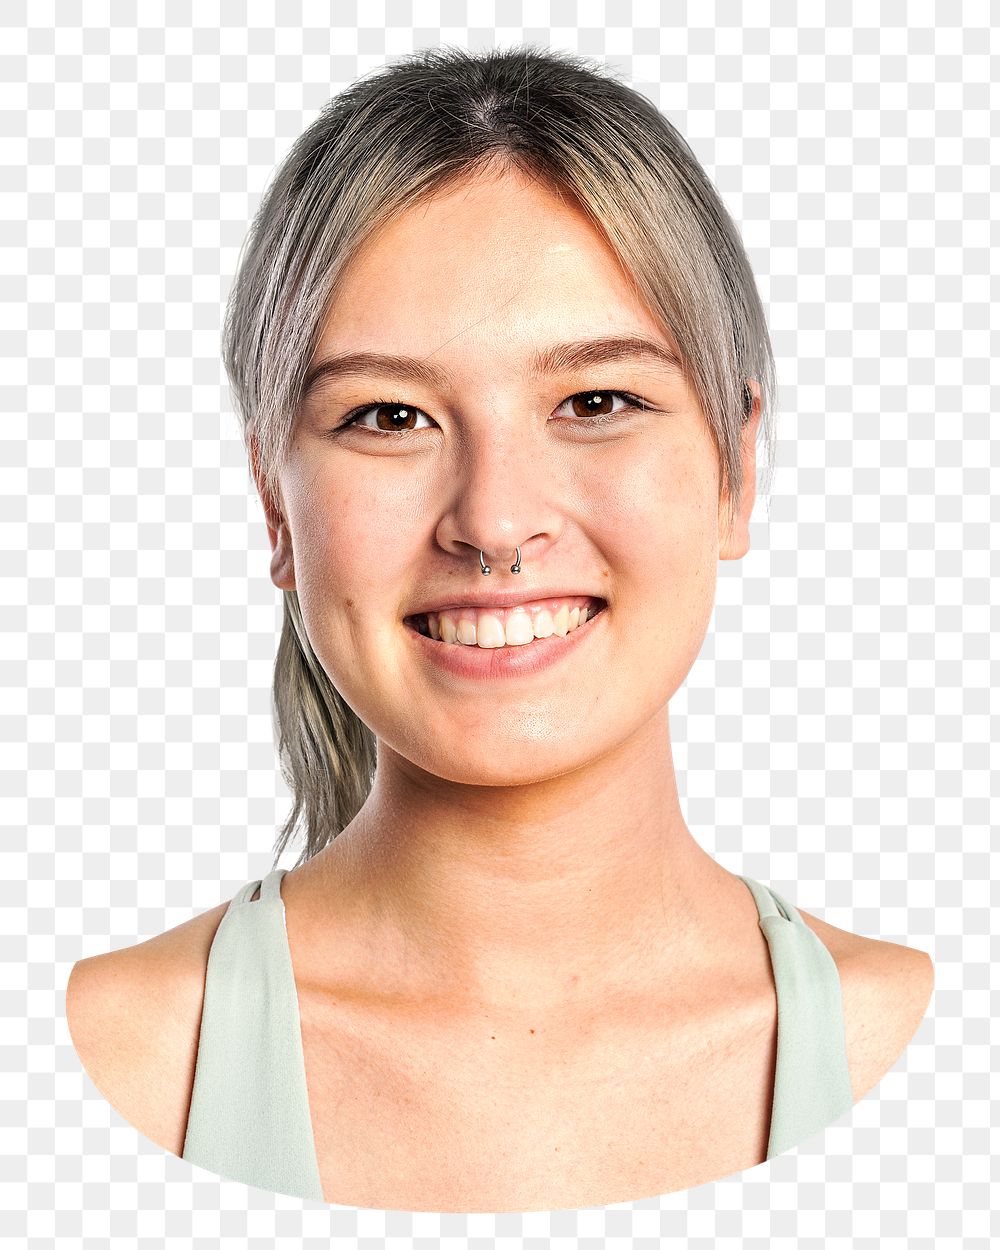 Healthy woman png portrait, transparent background